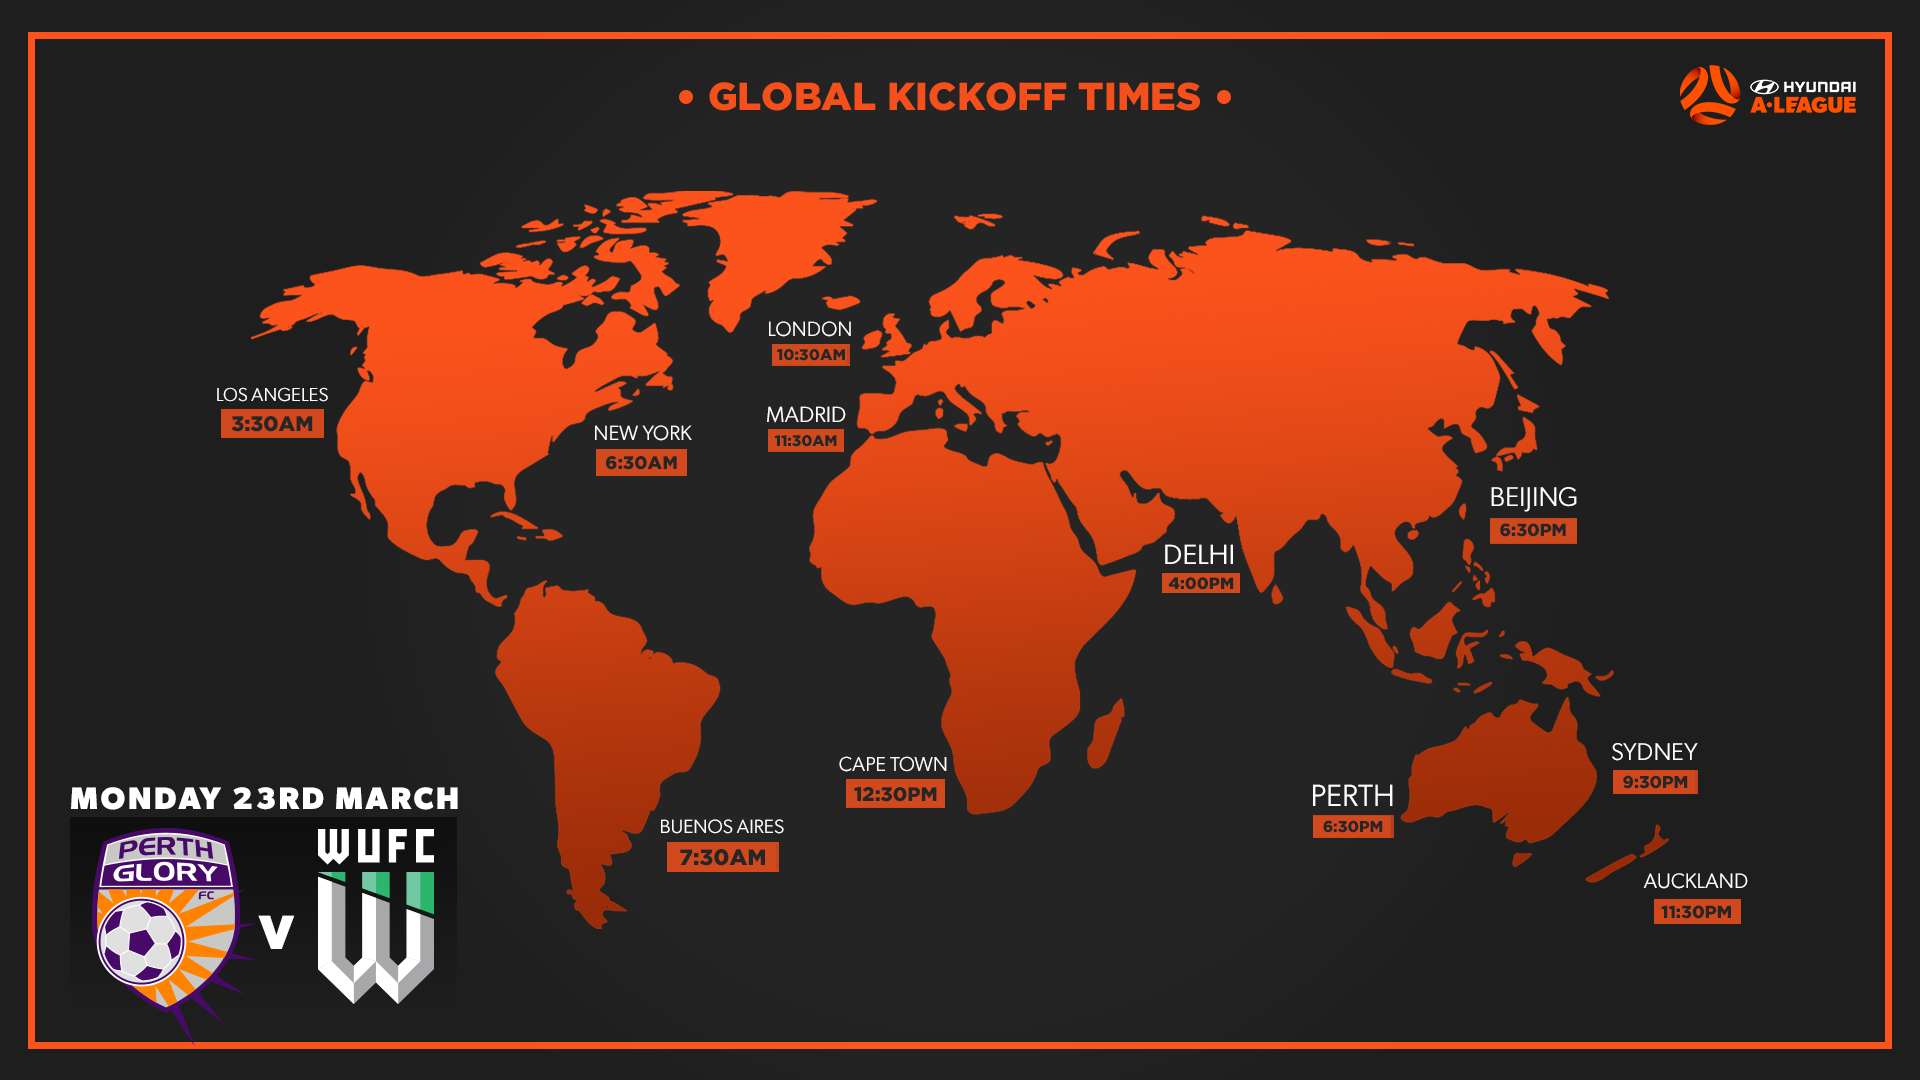 Global kick off times